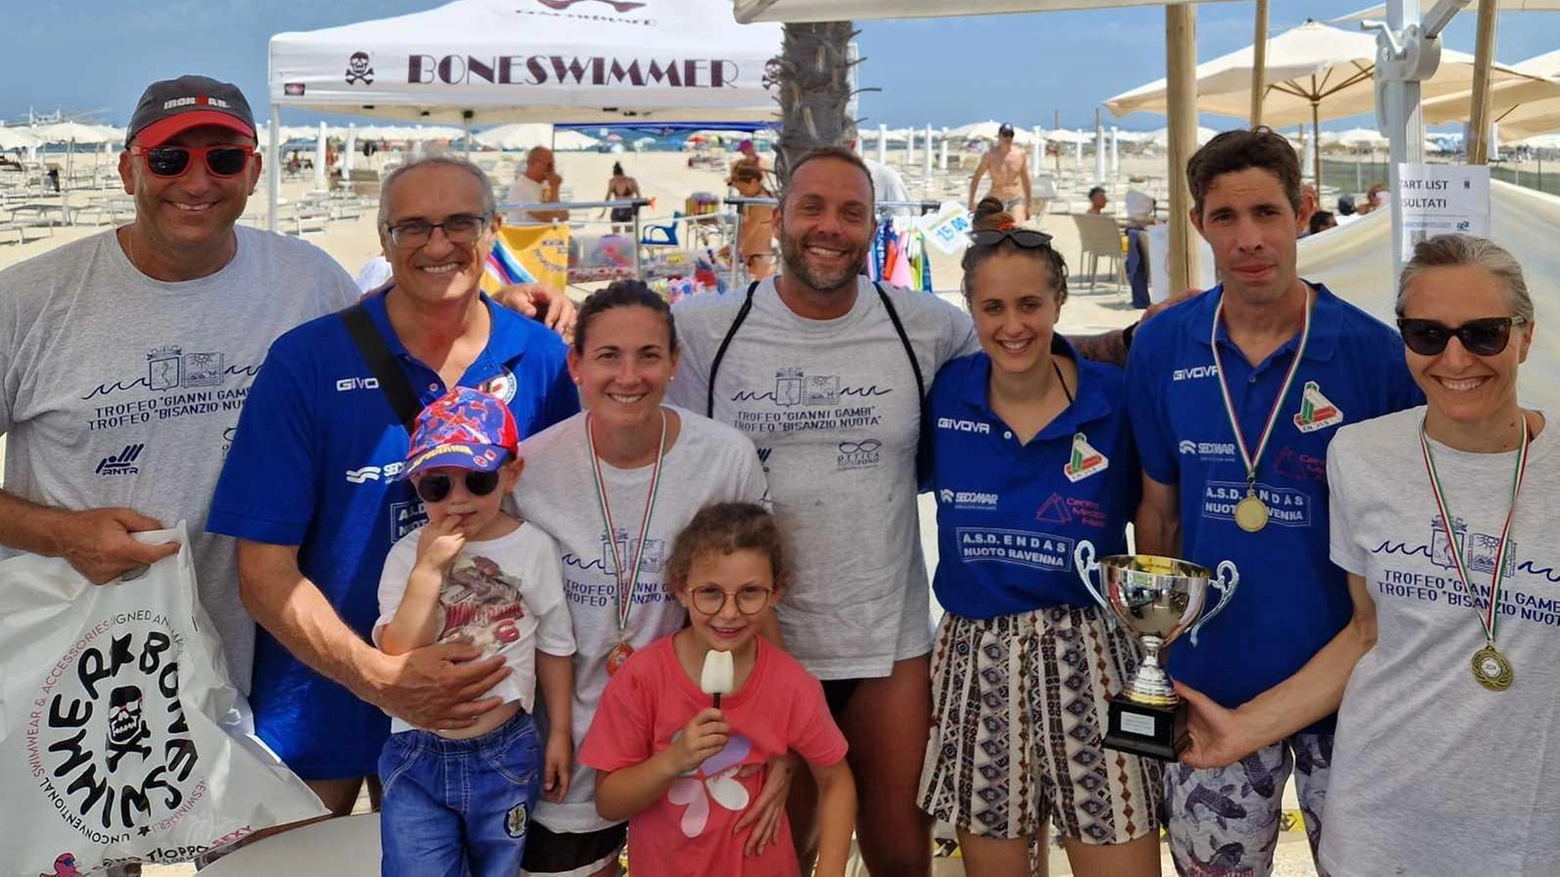 Successo per il Trofeo 'Gianni Gambi' e 'Trofeo Bisanzio Nuota' a Marina di Ravenna con atleti provenienti da diverse regioni. Ottimi risultati per gli atleti dell'Endas Nuoto Ravenna.